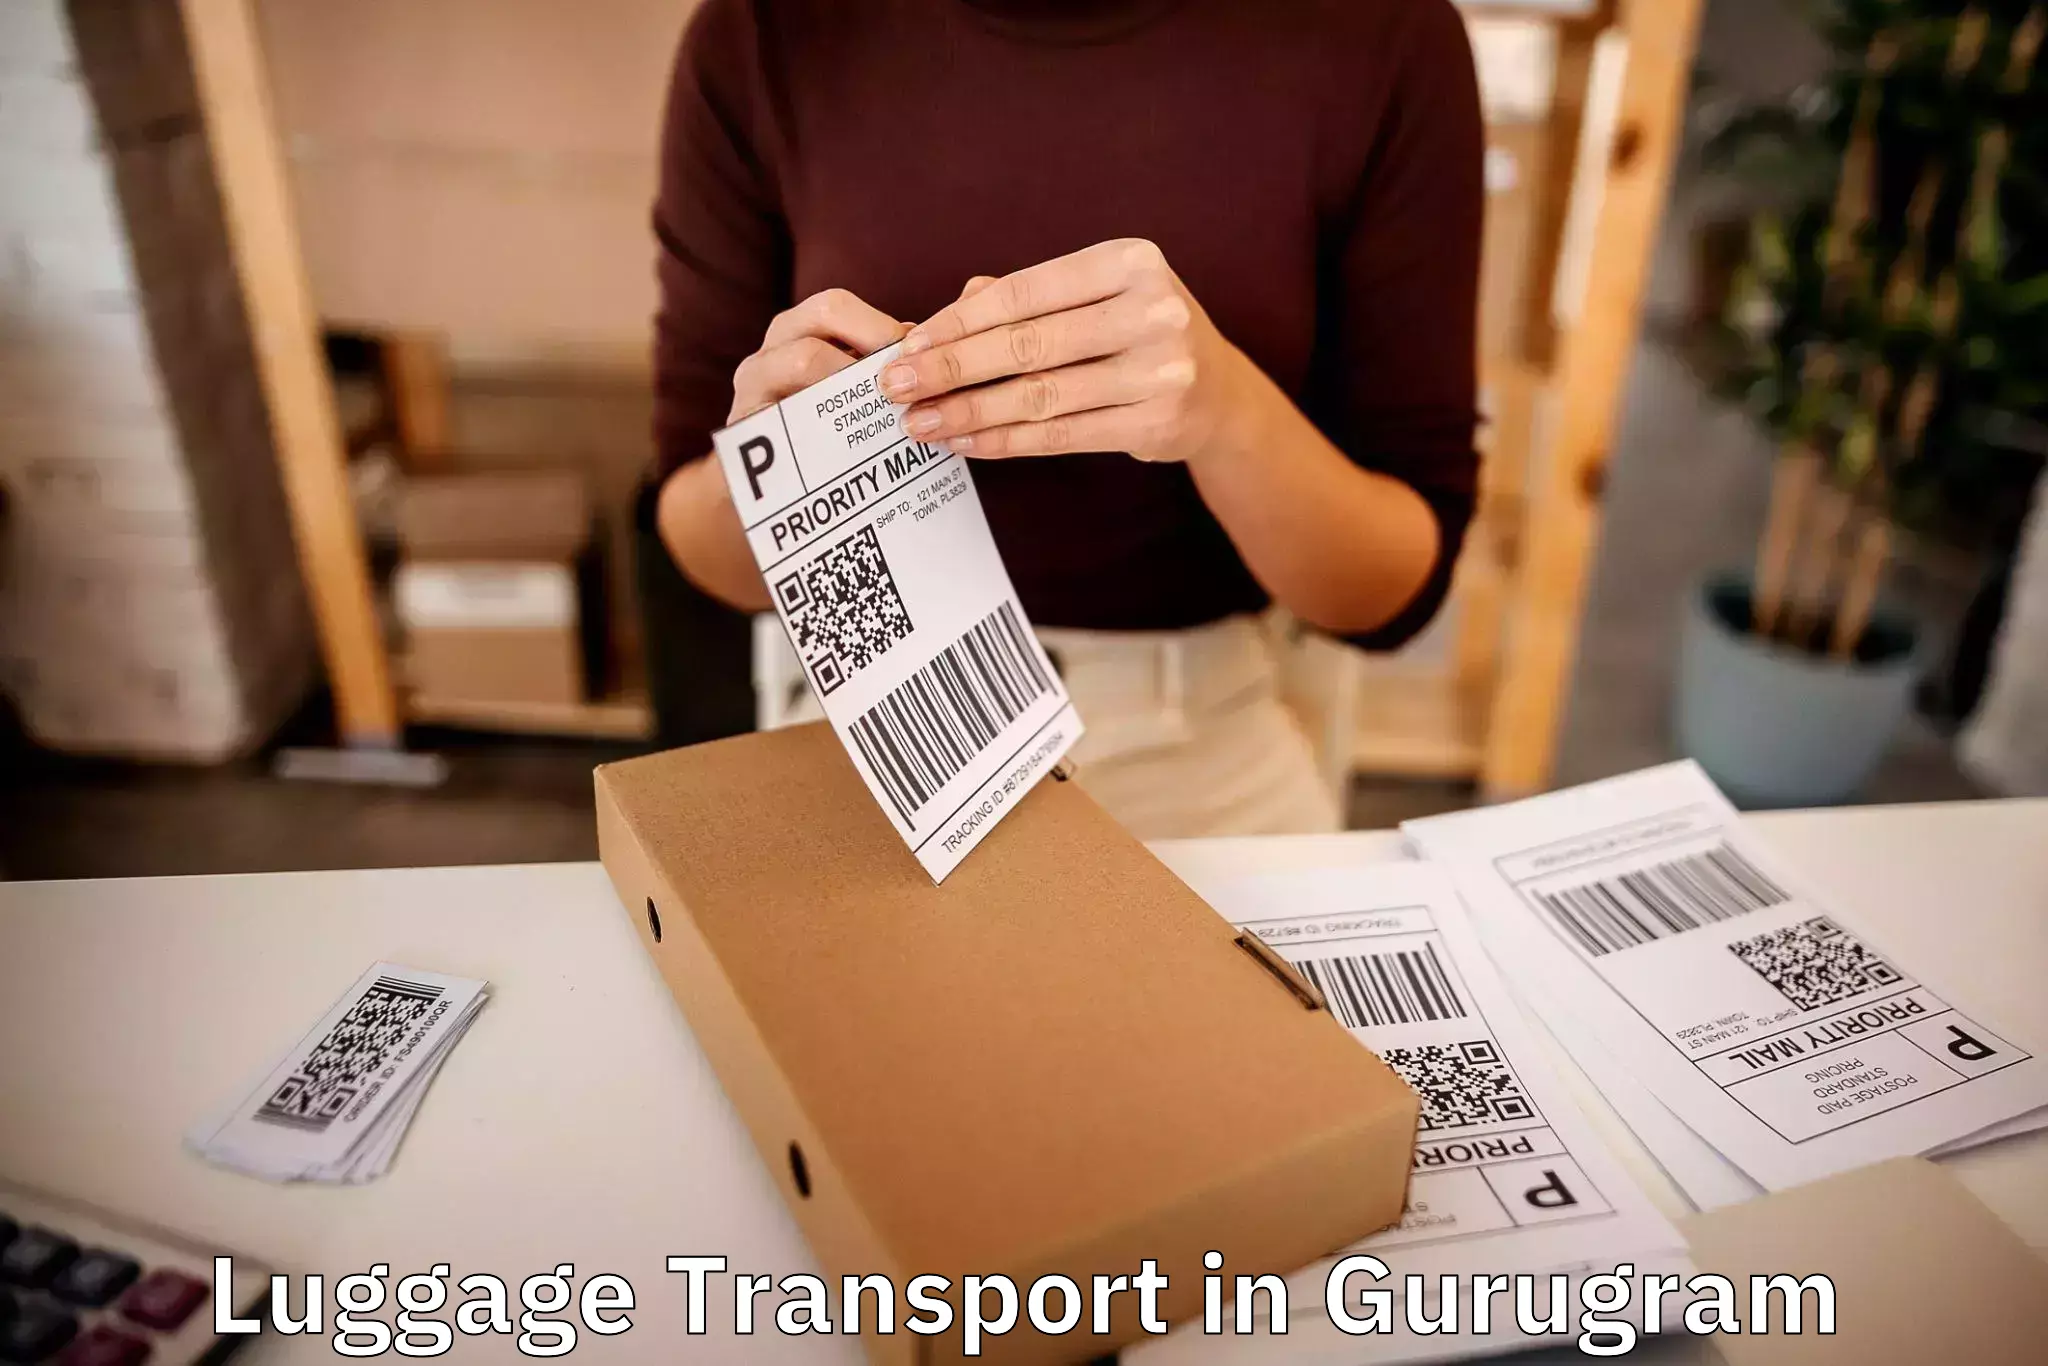 Luggage transport guidelines in Gurugram